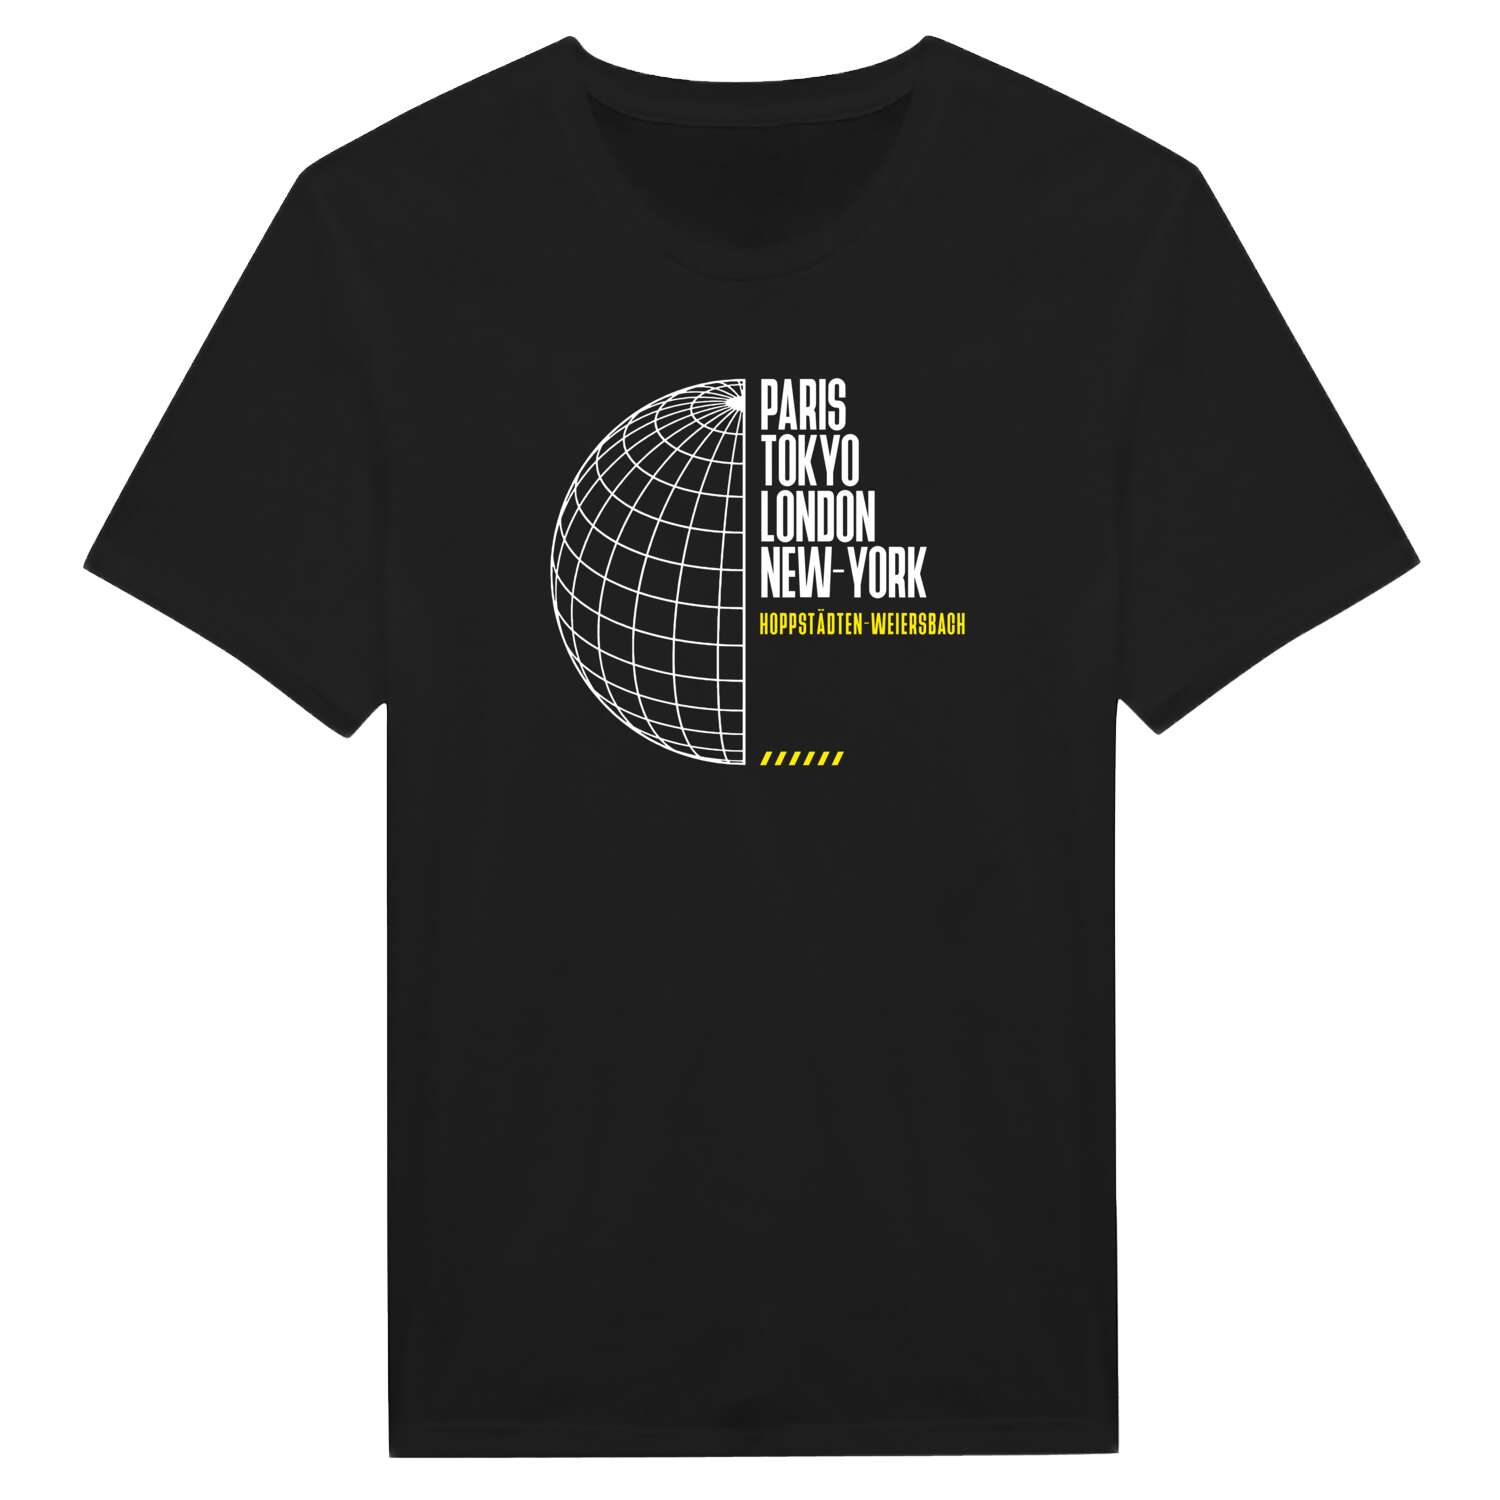 Hoppstädten-Weiersbach T-Shirt »Paris Tokyo London«